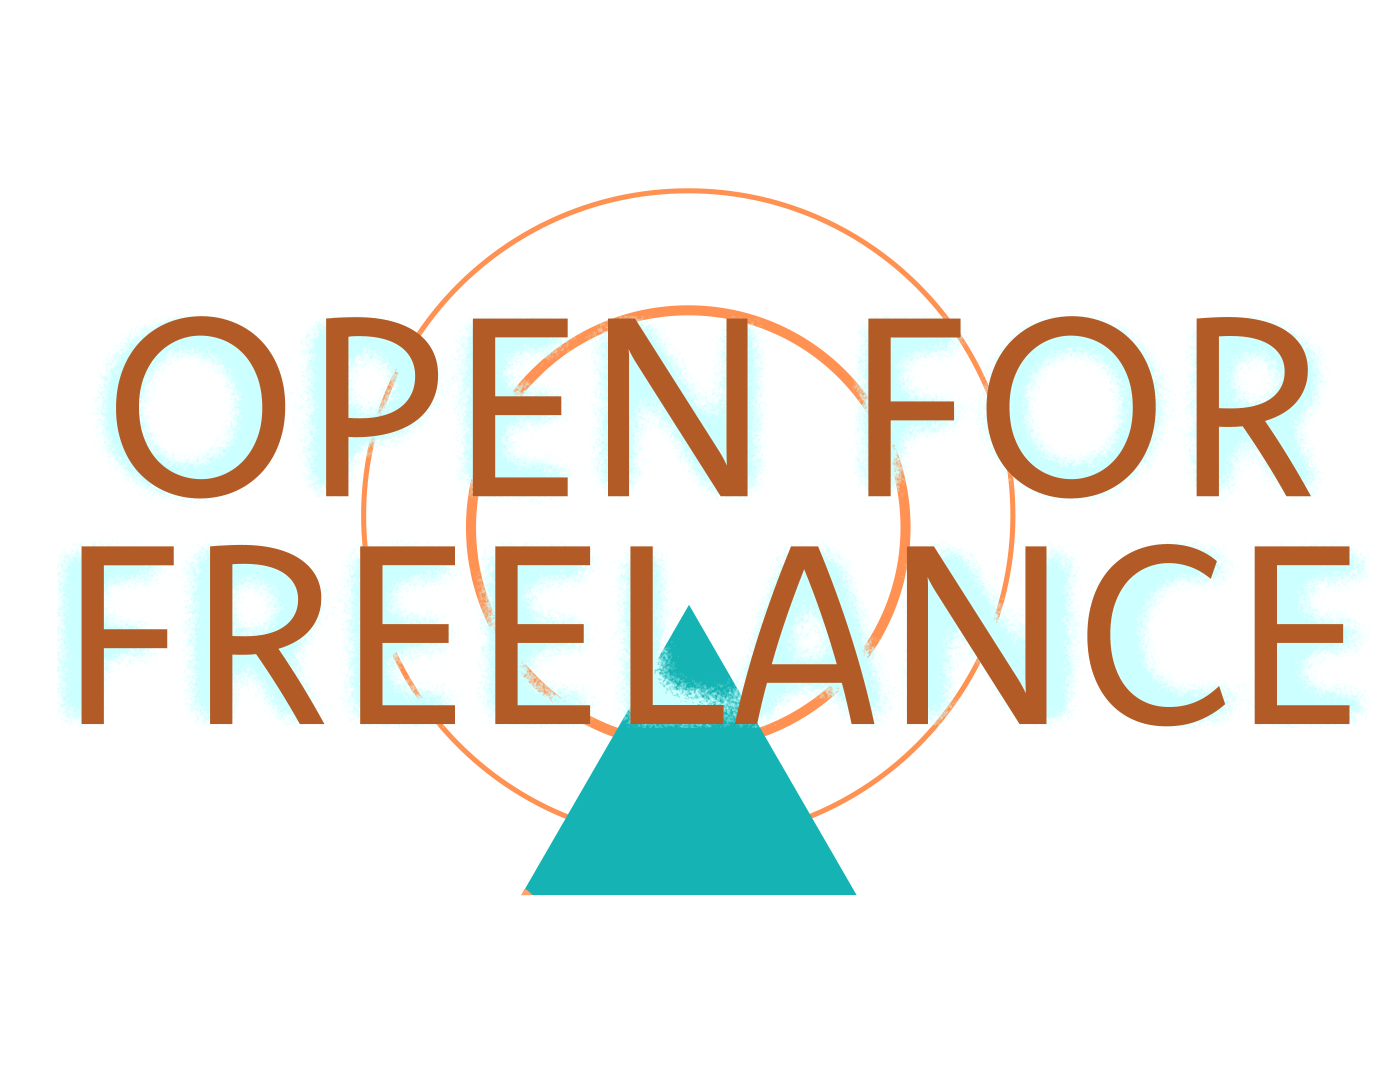 Open for freelance